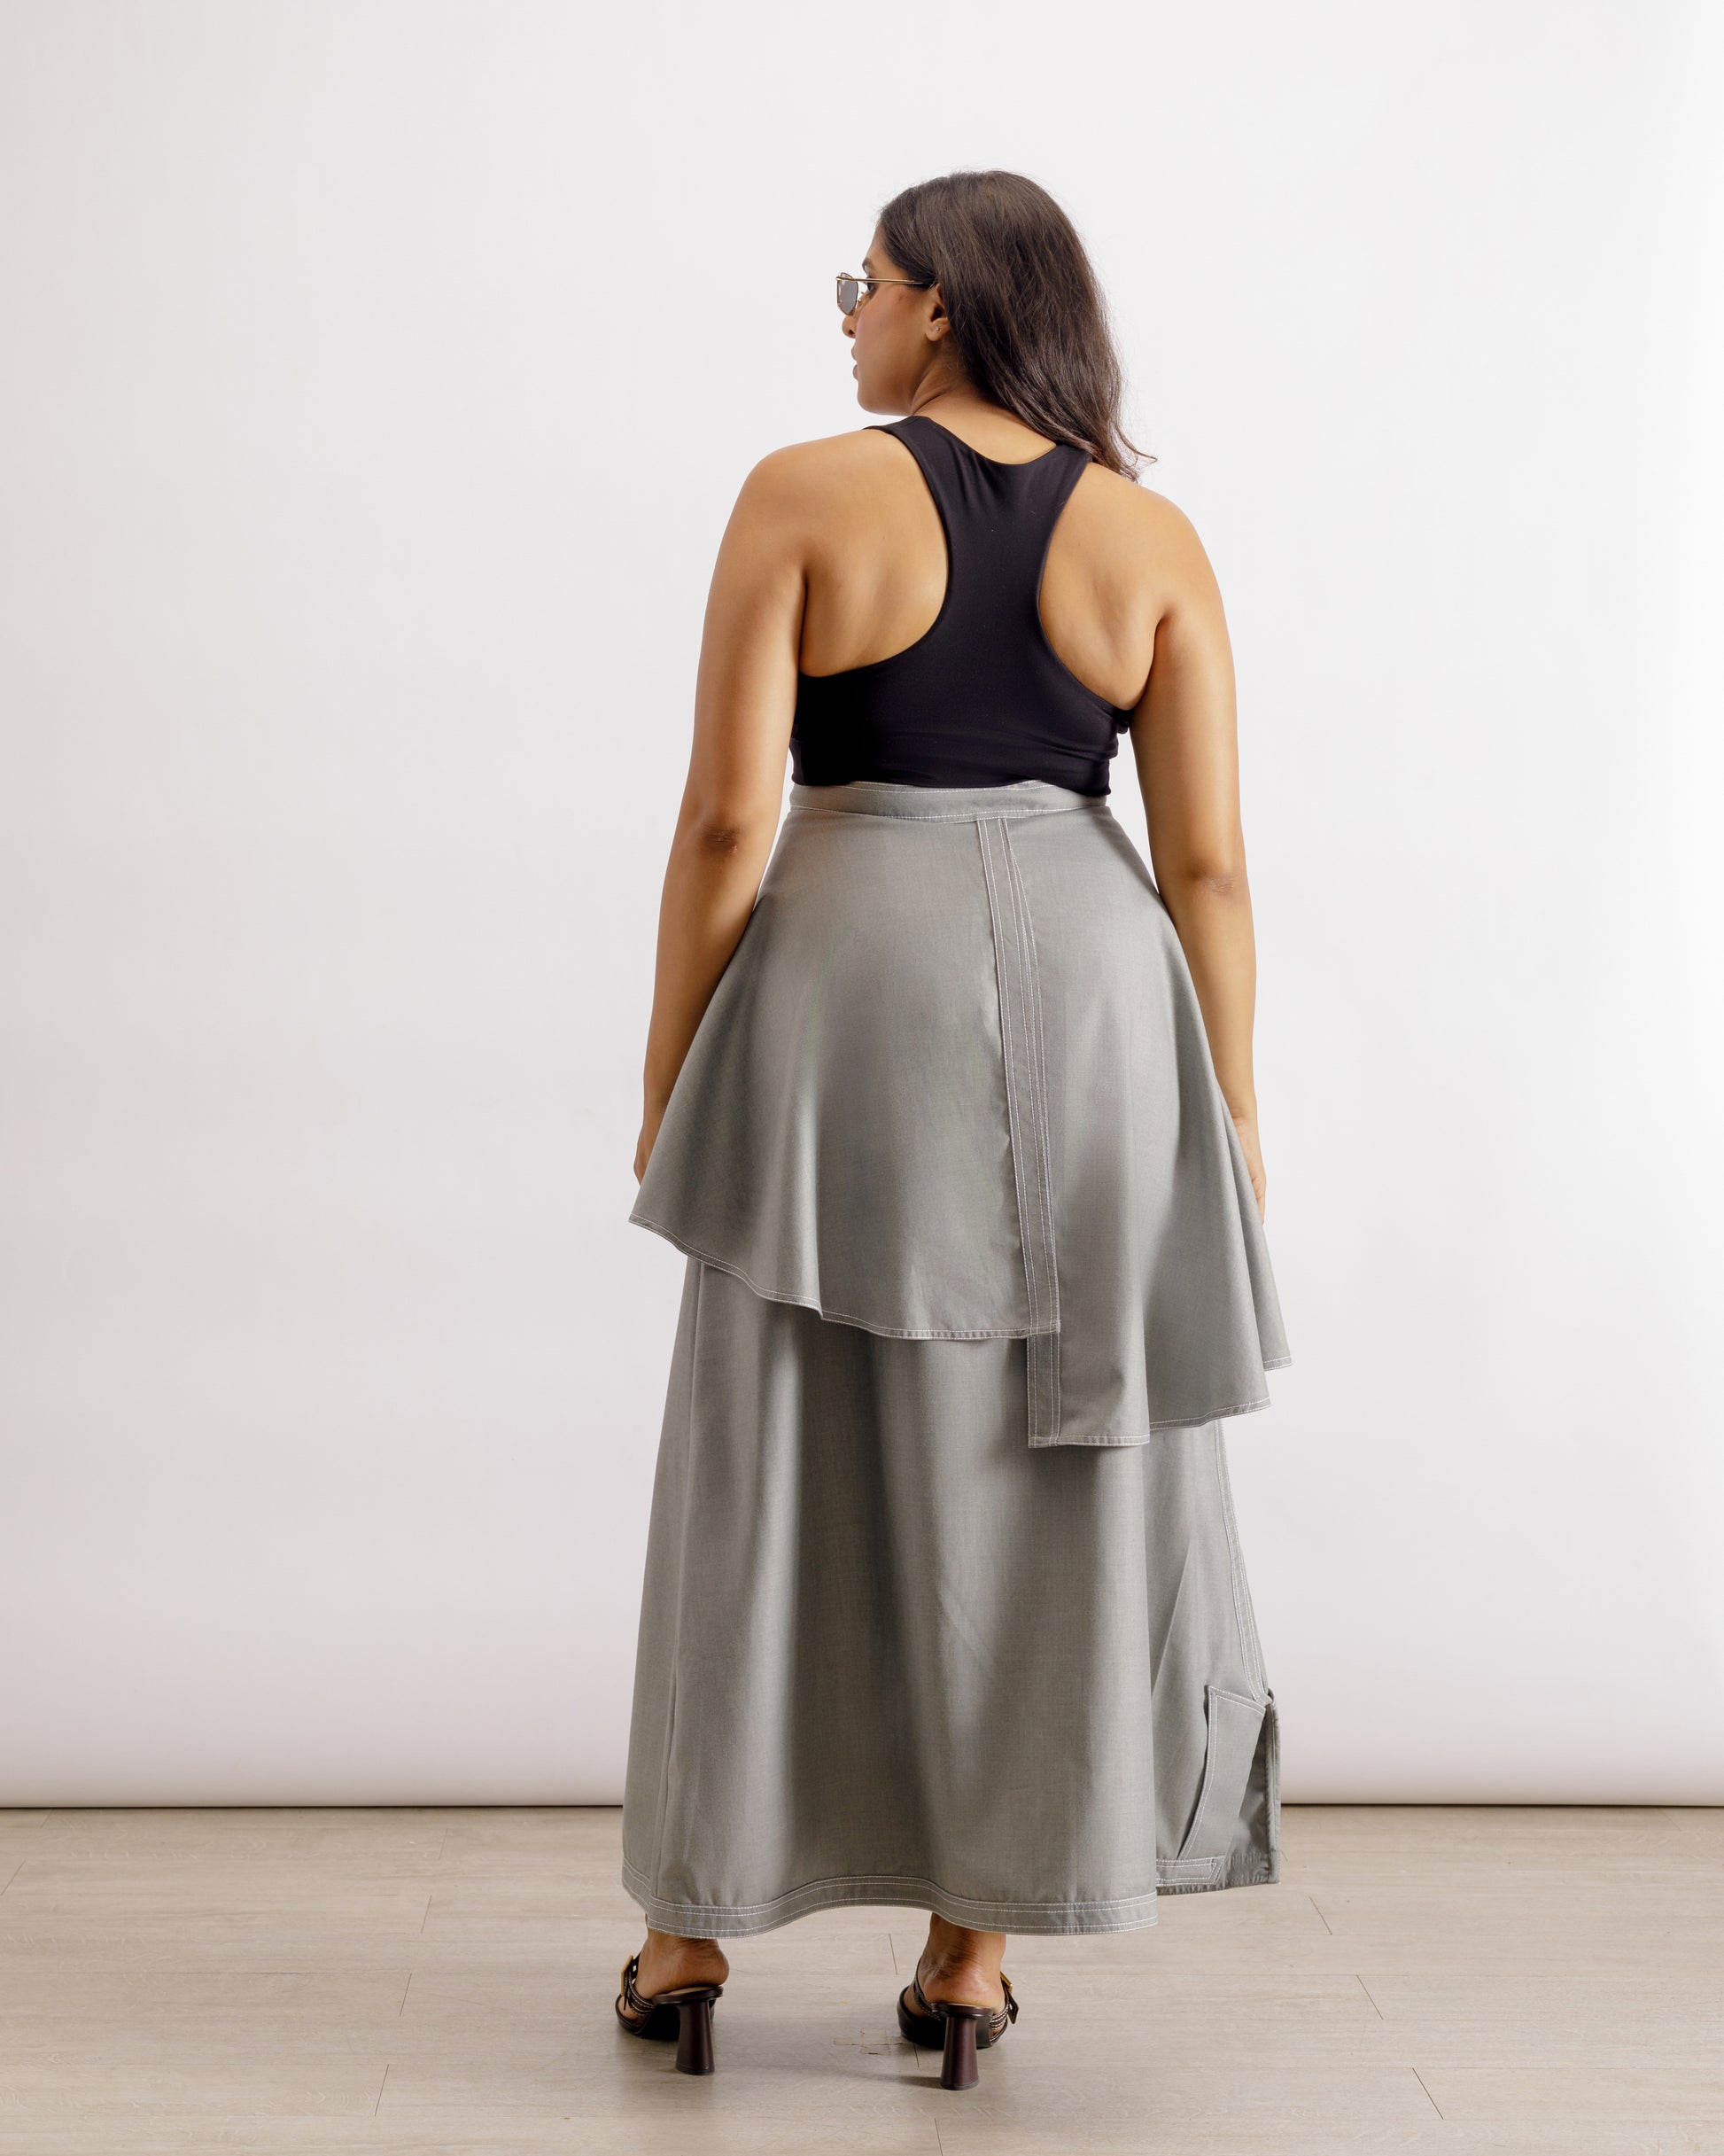 Designer Skirts for Women | Heeroh Masterji Skirt | PAIVE